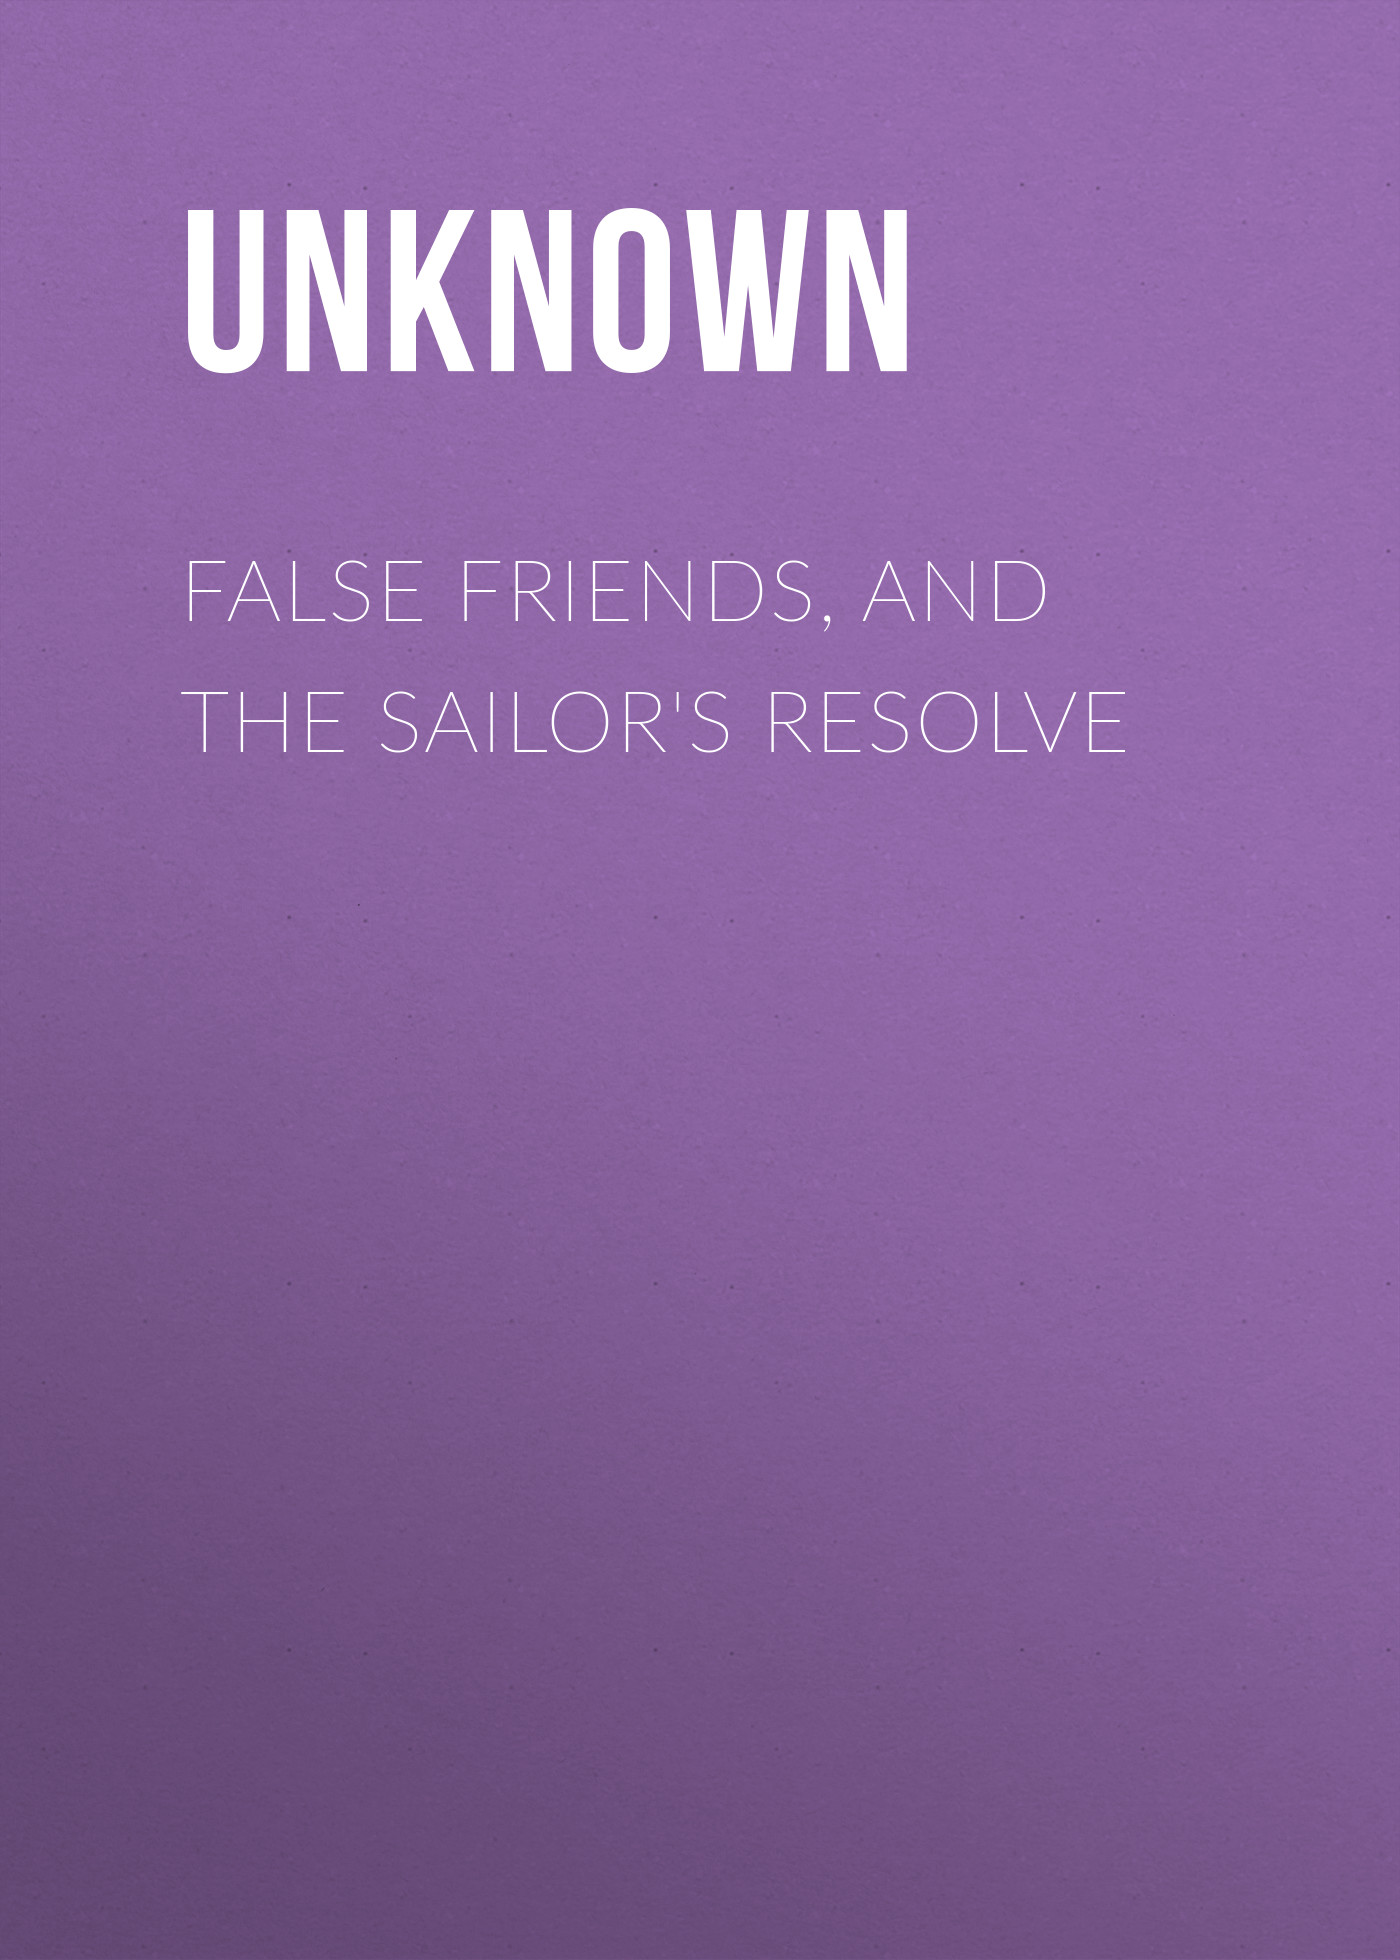 Книга False Friends, and The Sailor's Resolve из серии , созданная  Unknown, может относится к жанру Зарубежная классика, Зарубежная старинная литература. Стоимость электронной книги False Friends, and The Sailor's Resolve с идентификатором 35496151 составляет 0 руб.